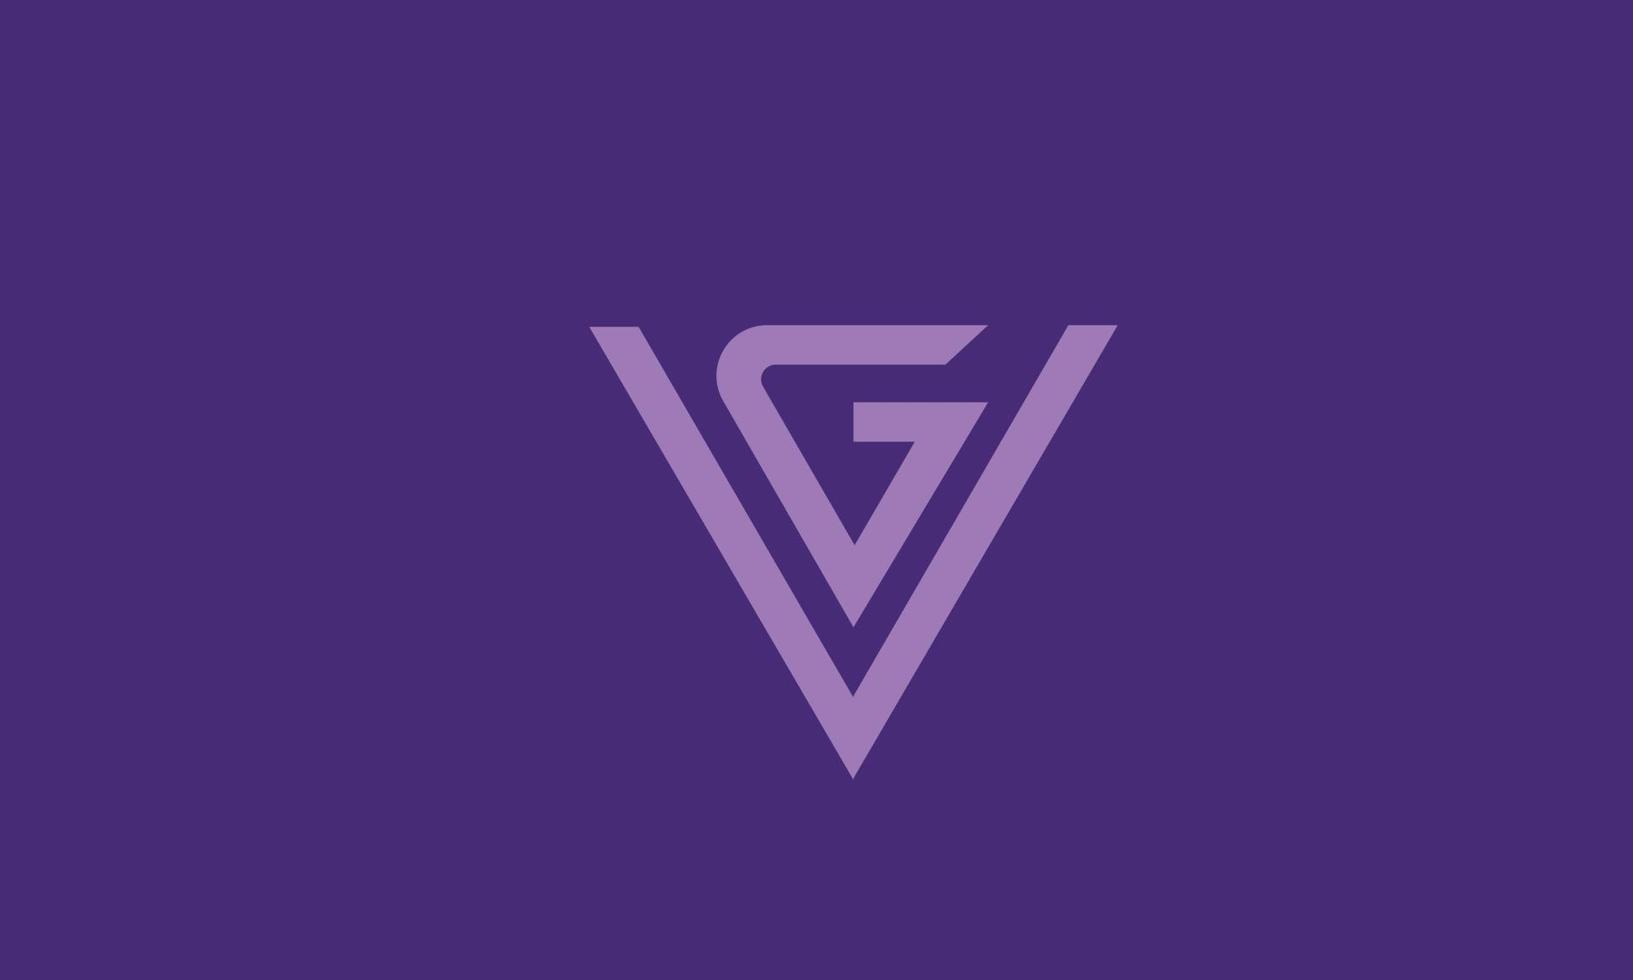 letras del alfabeto iniciales monograma logo vg, gv, v y g vector